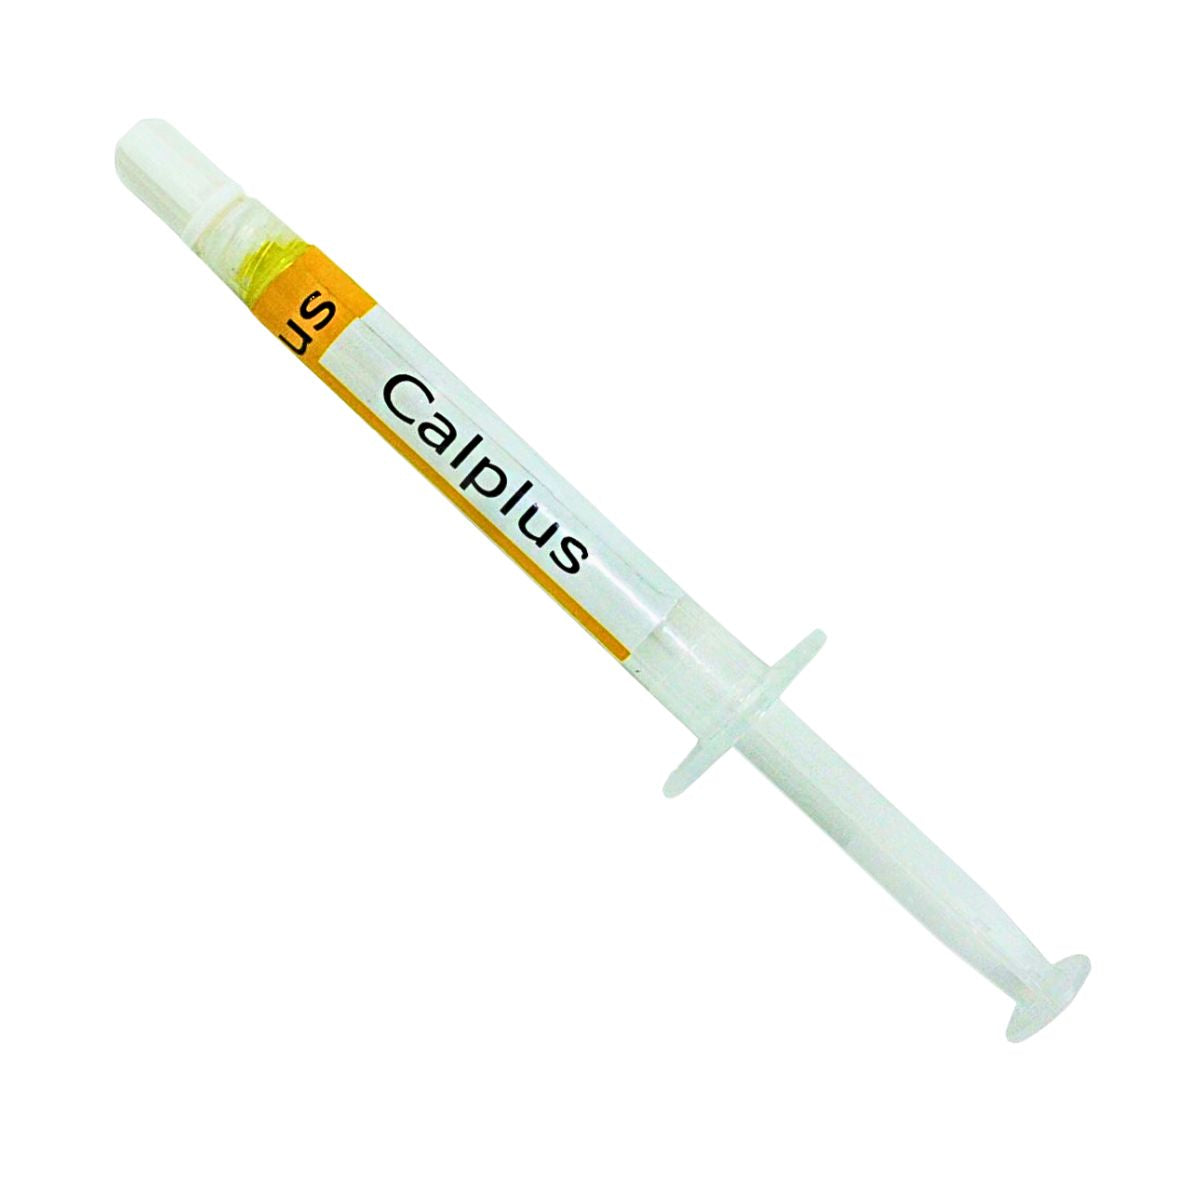 Prevest DenPro Calplus Dental Paste 2g Syringe